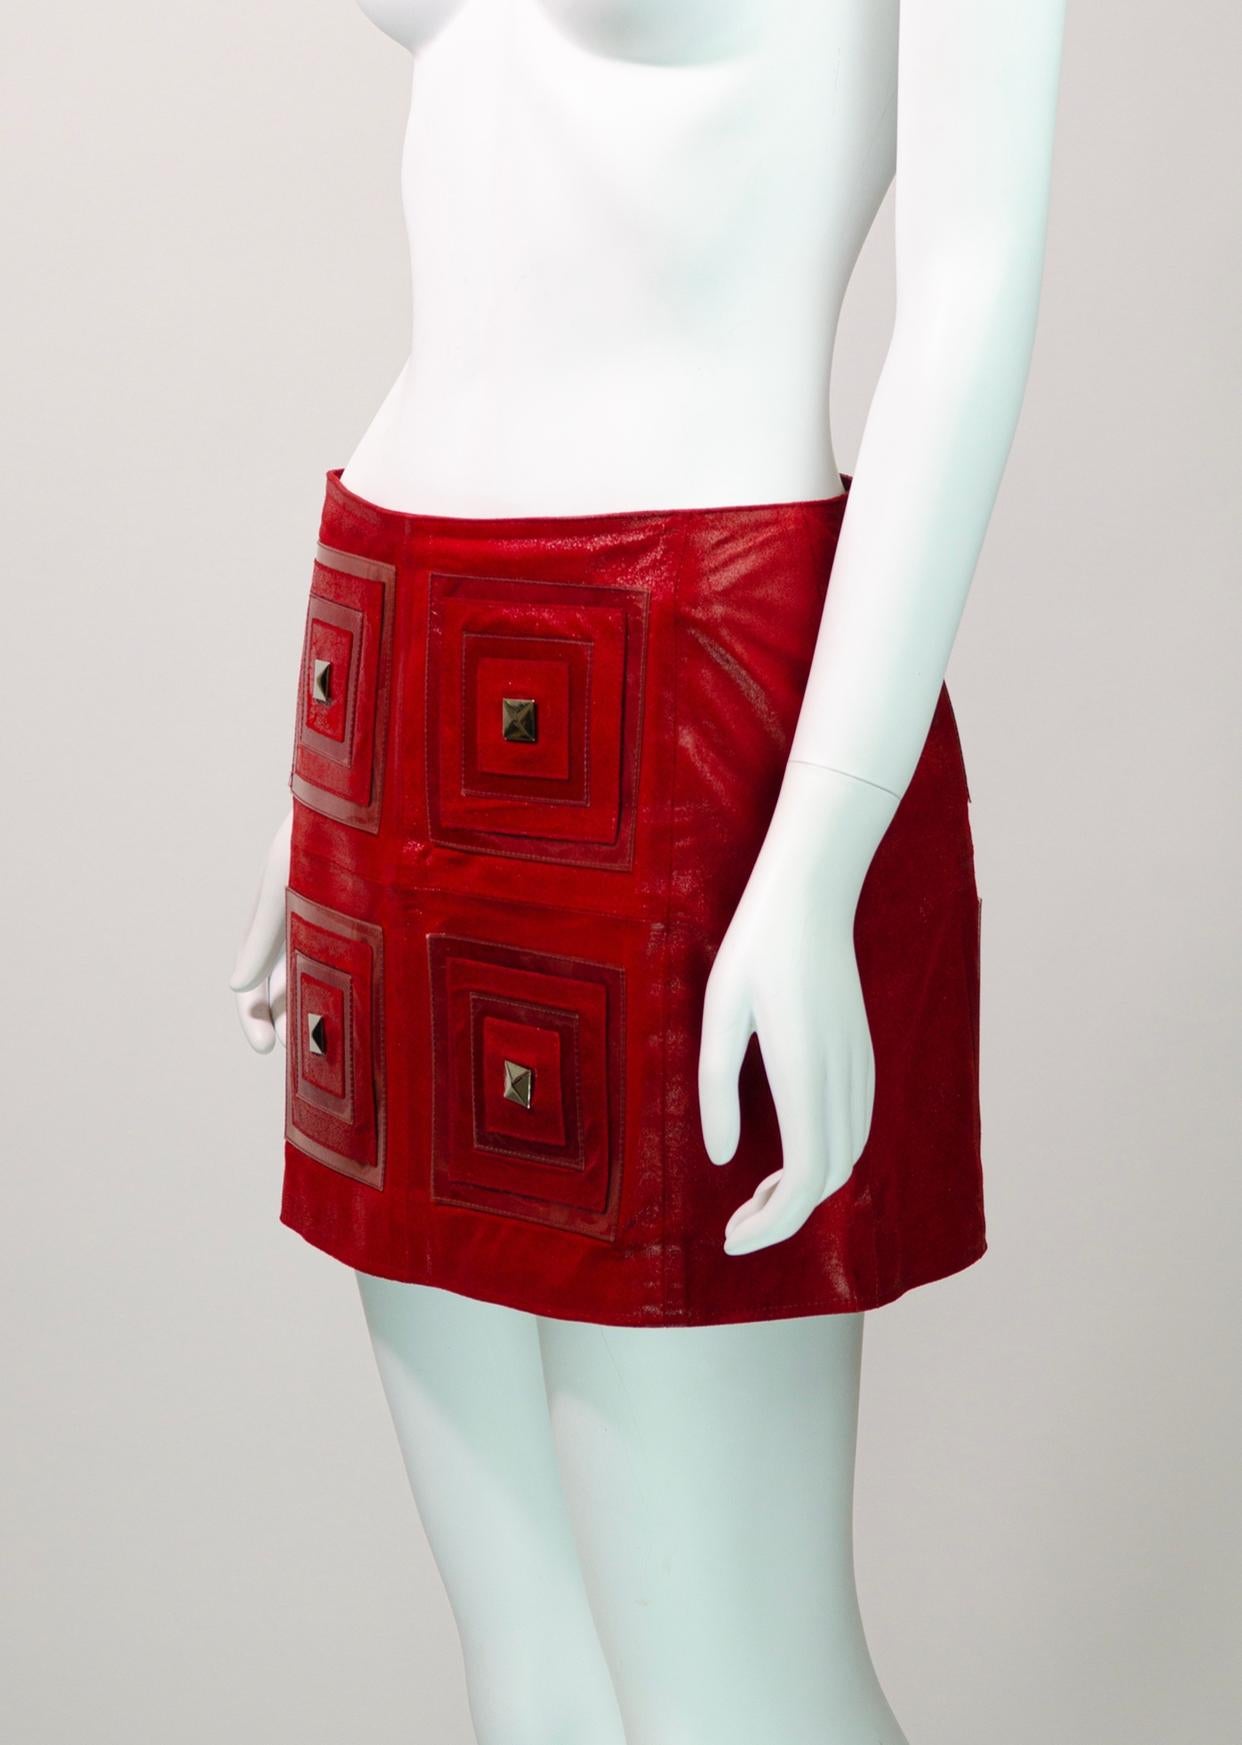 Magnifique et rare jupe vintage Paco Rabanne de sa collection printemps-été 2002.

Fabriquée à partir d'un cuir rouge souple, cette mini-jupe unique présente quatre carrés à l'avant et à l'arrière qui sont embellis par des clous argentés et des